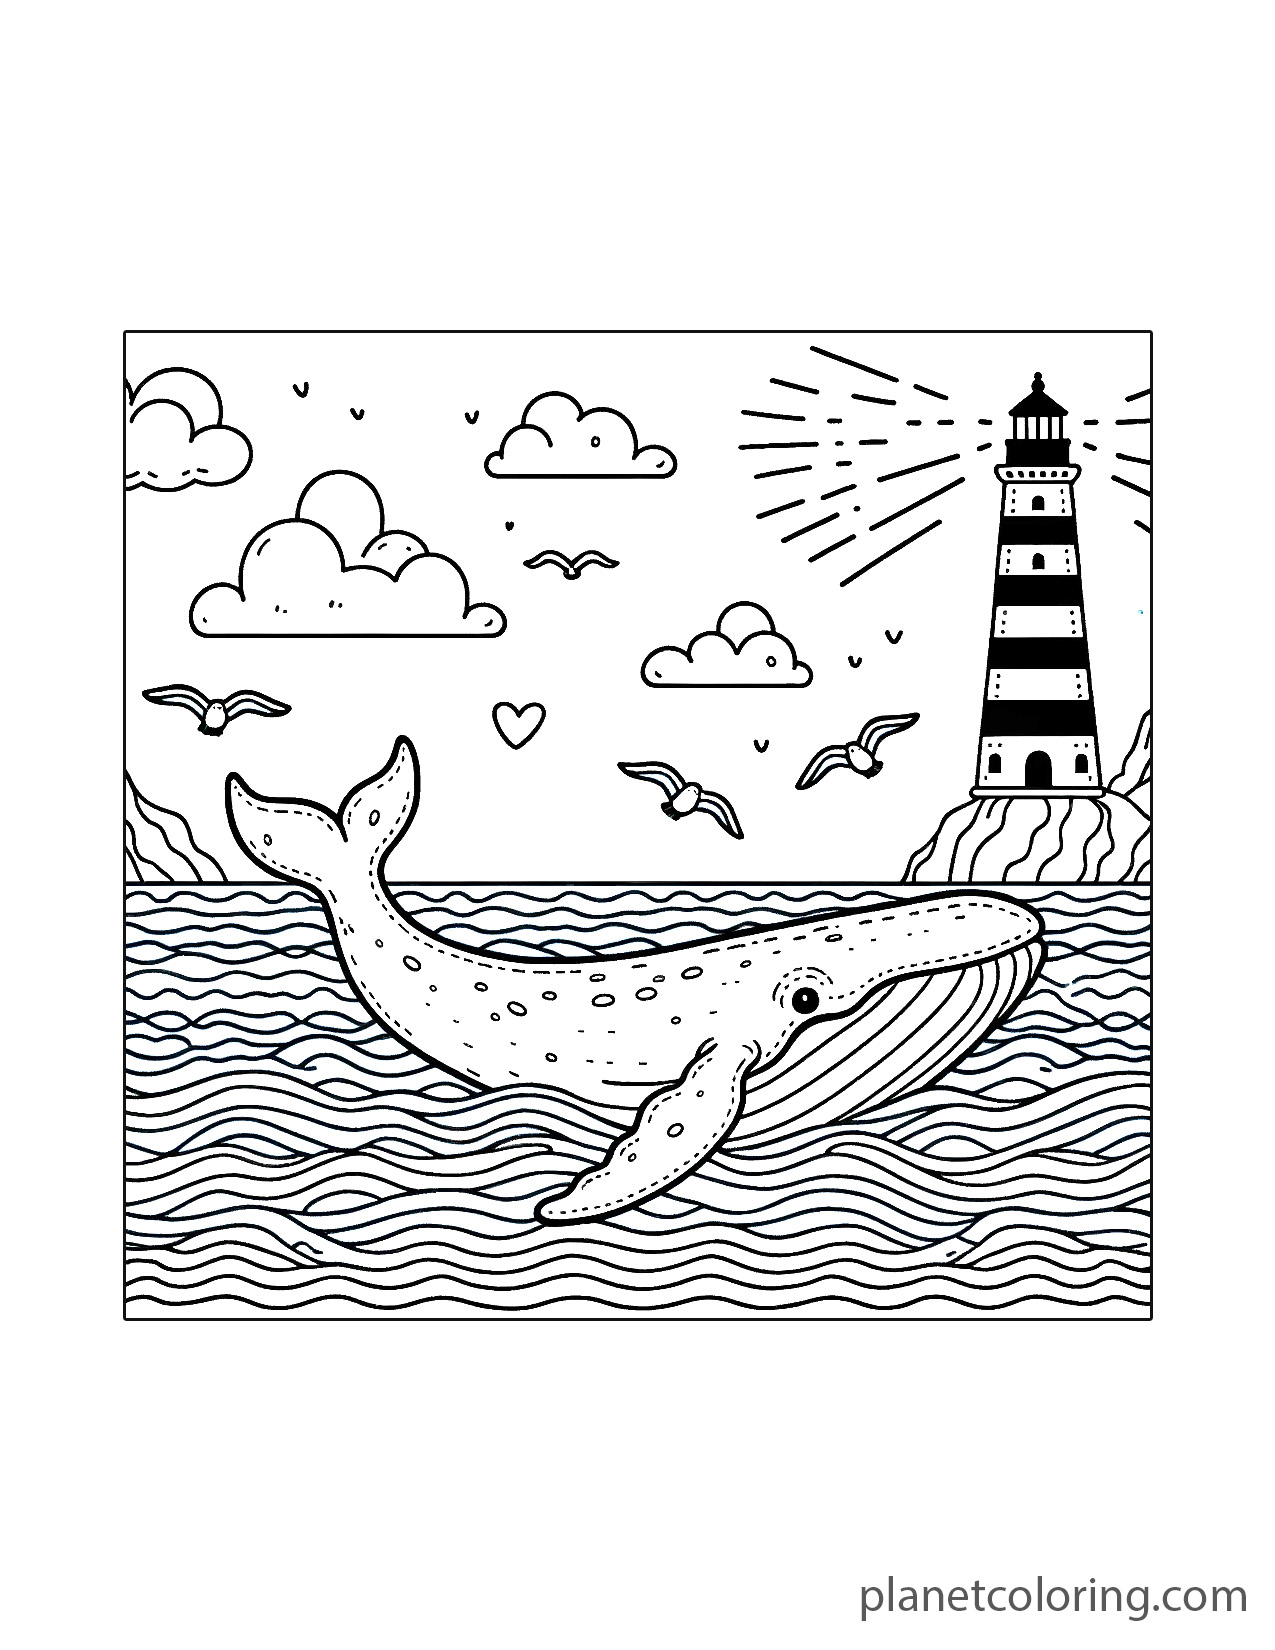 Whale near a lighthouse